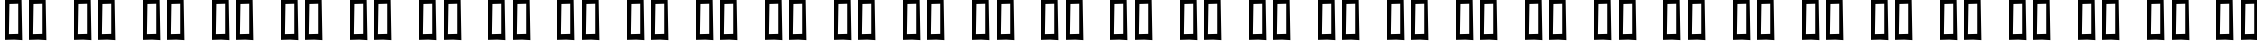 Пример написания русского алфавита шрифтом Chubby Cheeks